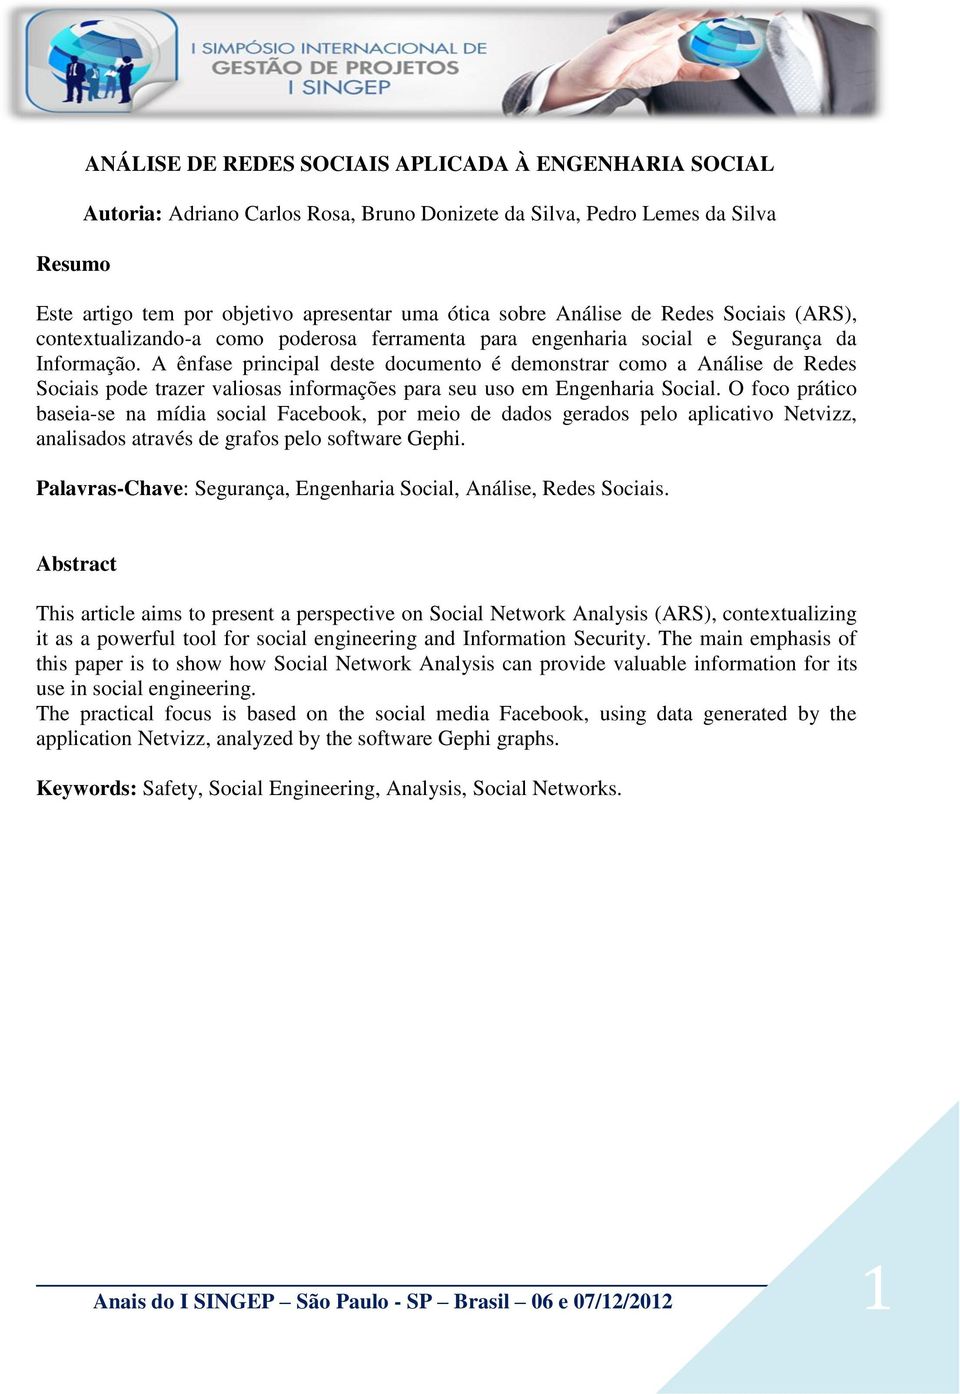 A ênfase principal deste documento é demonstrar como a Análise de Redes Sociais pode trazer valiosas informações para seu uso em Engenharia Social.